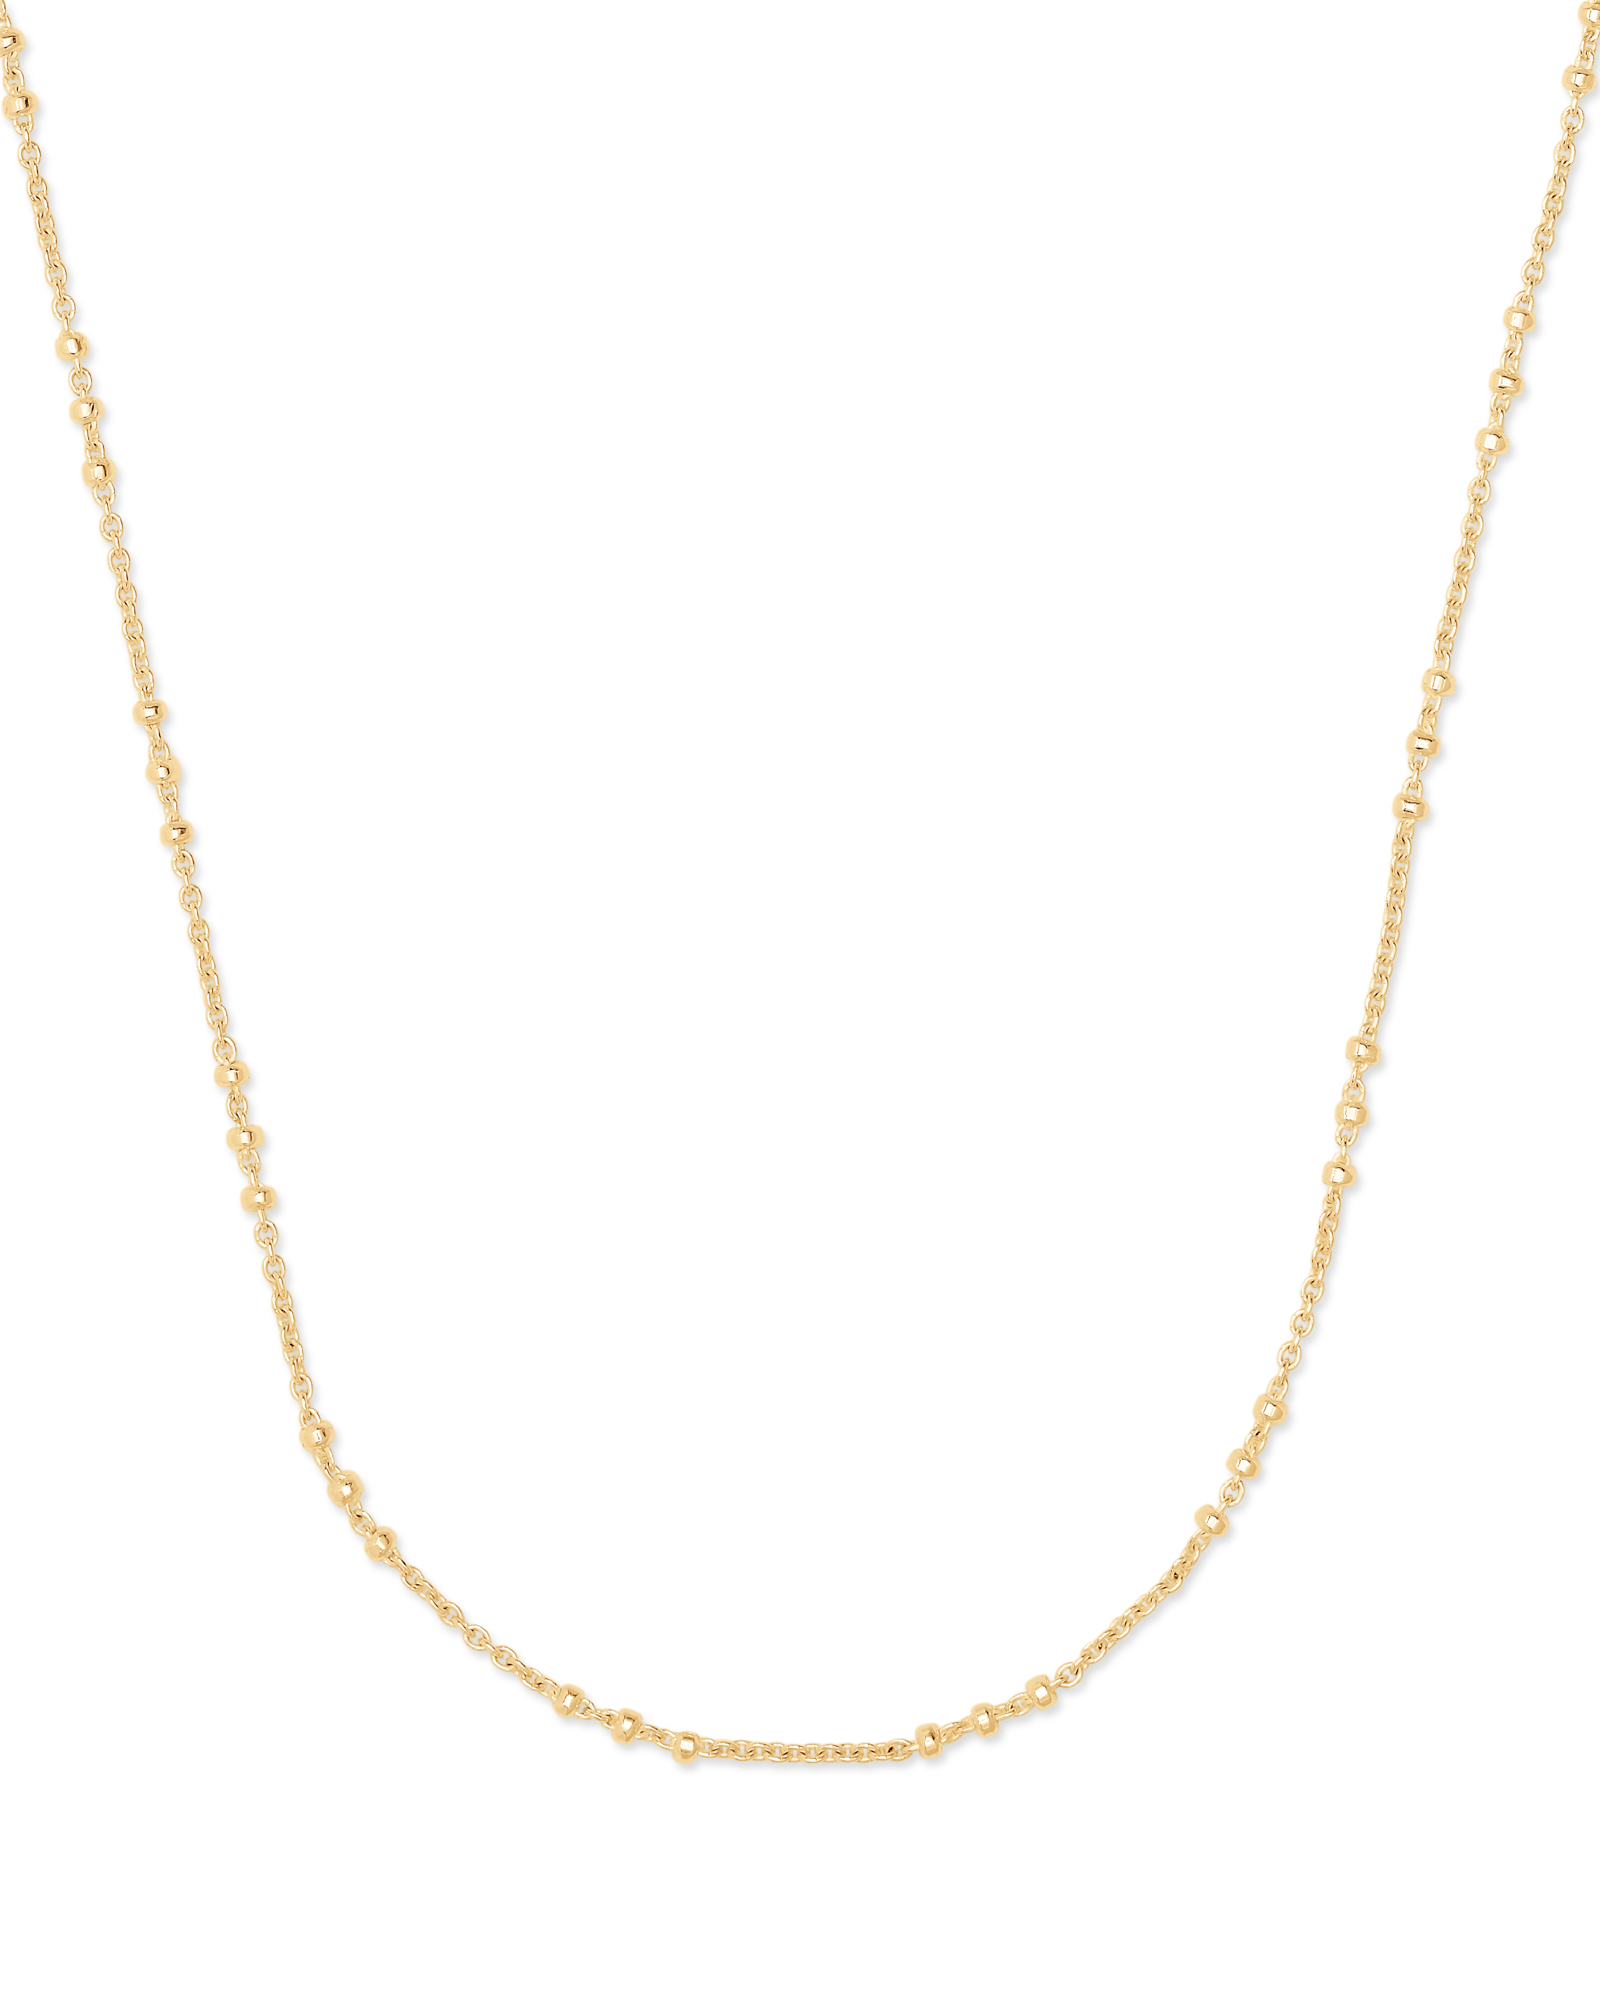 Satellite Chain Necklace in 18k Gold Vermeil | Kendra Scott